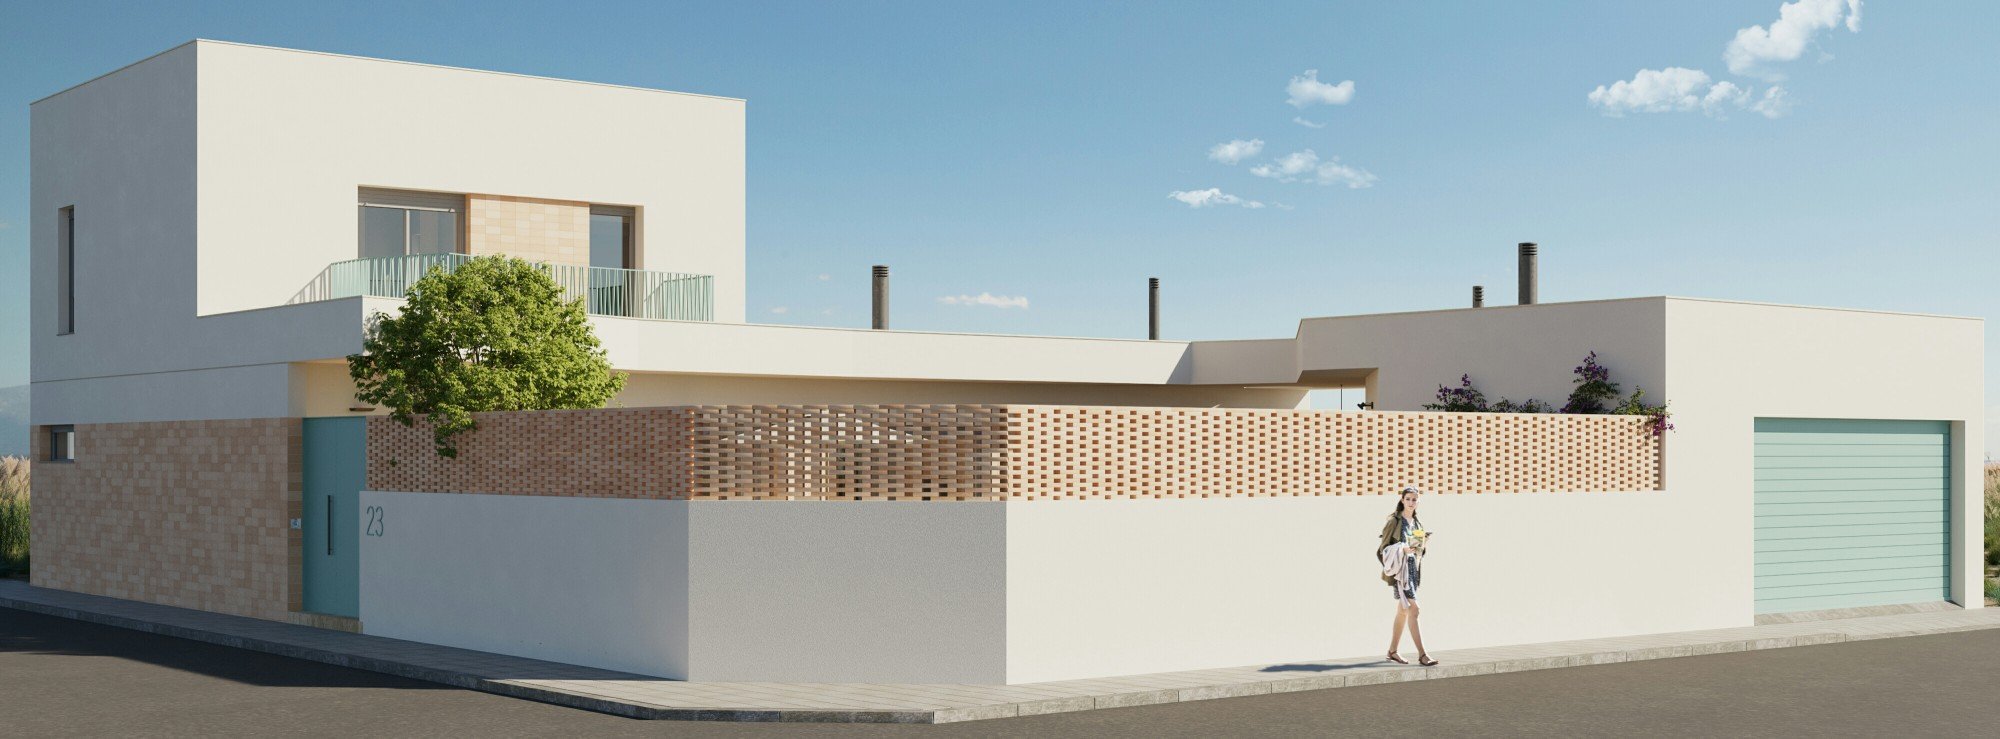 ¿Qué es el estándar Passivhaus? :: NUÑO ARQUITECTURA  Arquitectura sostenible diseñada para tí